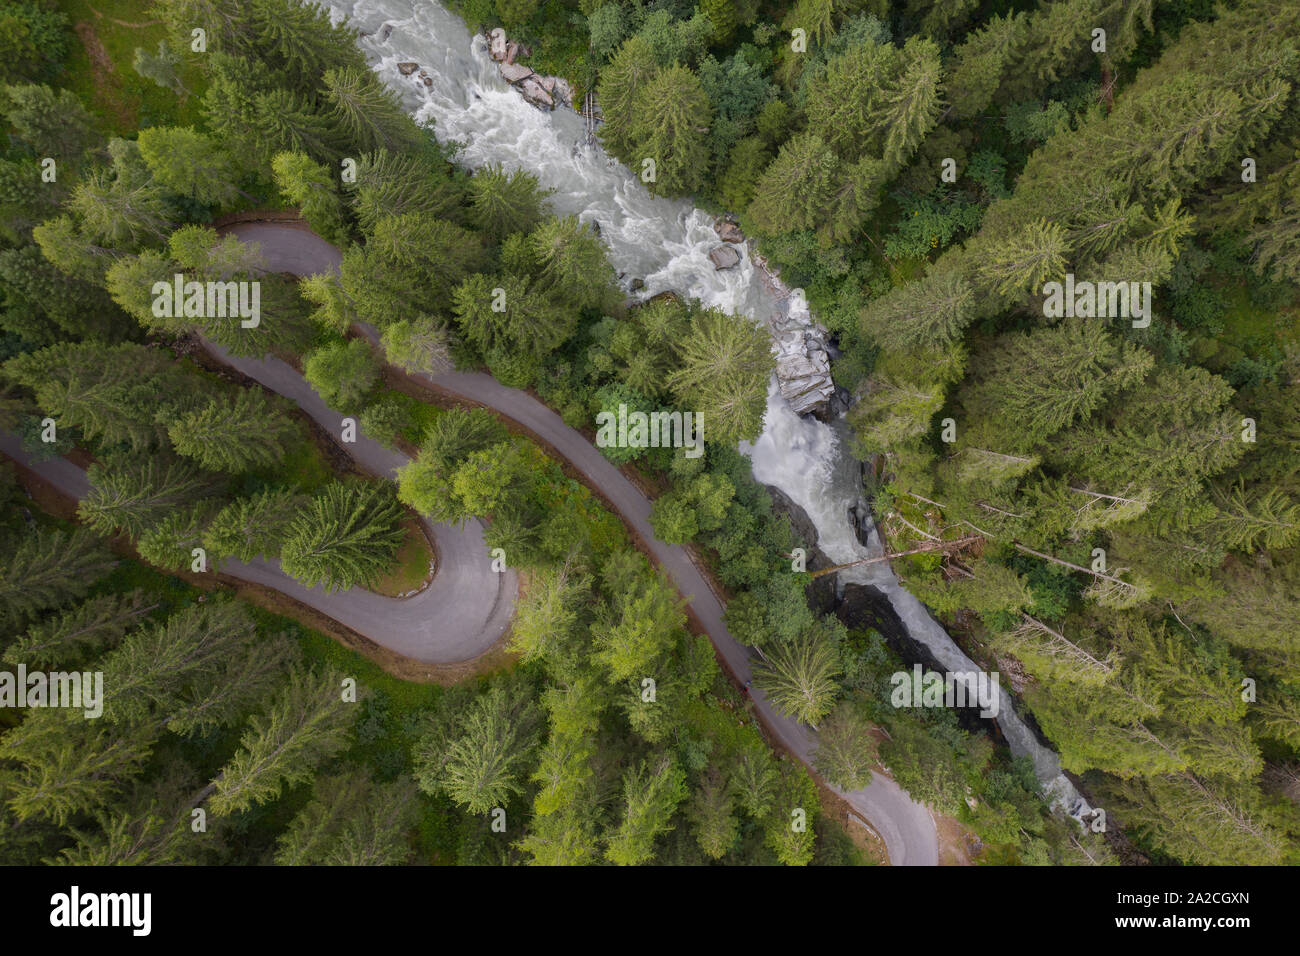 Foto mit einer Drohne über eine S-förmige Straße in einem Nadelbaum fliegen und einen Wasserfall in einem weichen Atmosphäre genommen Stockfoto